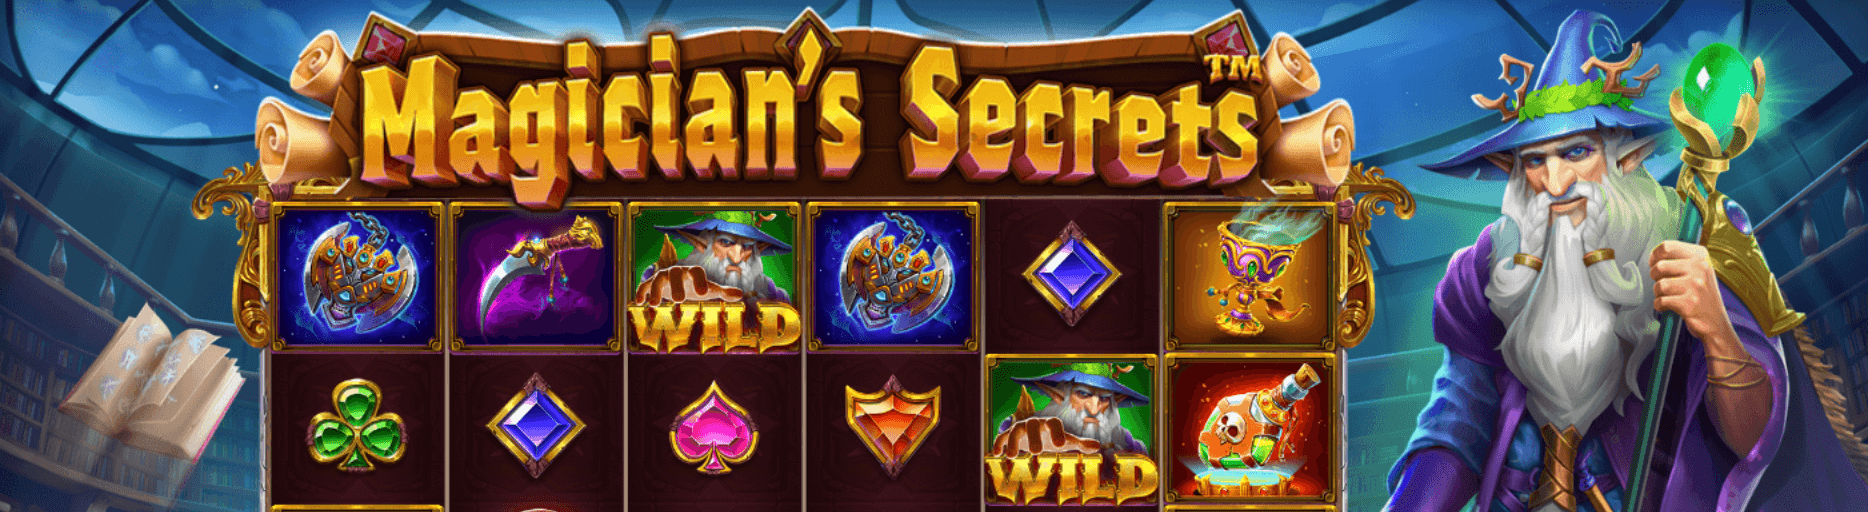 slot online Magician’s Secrets